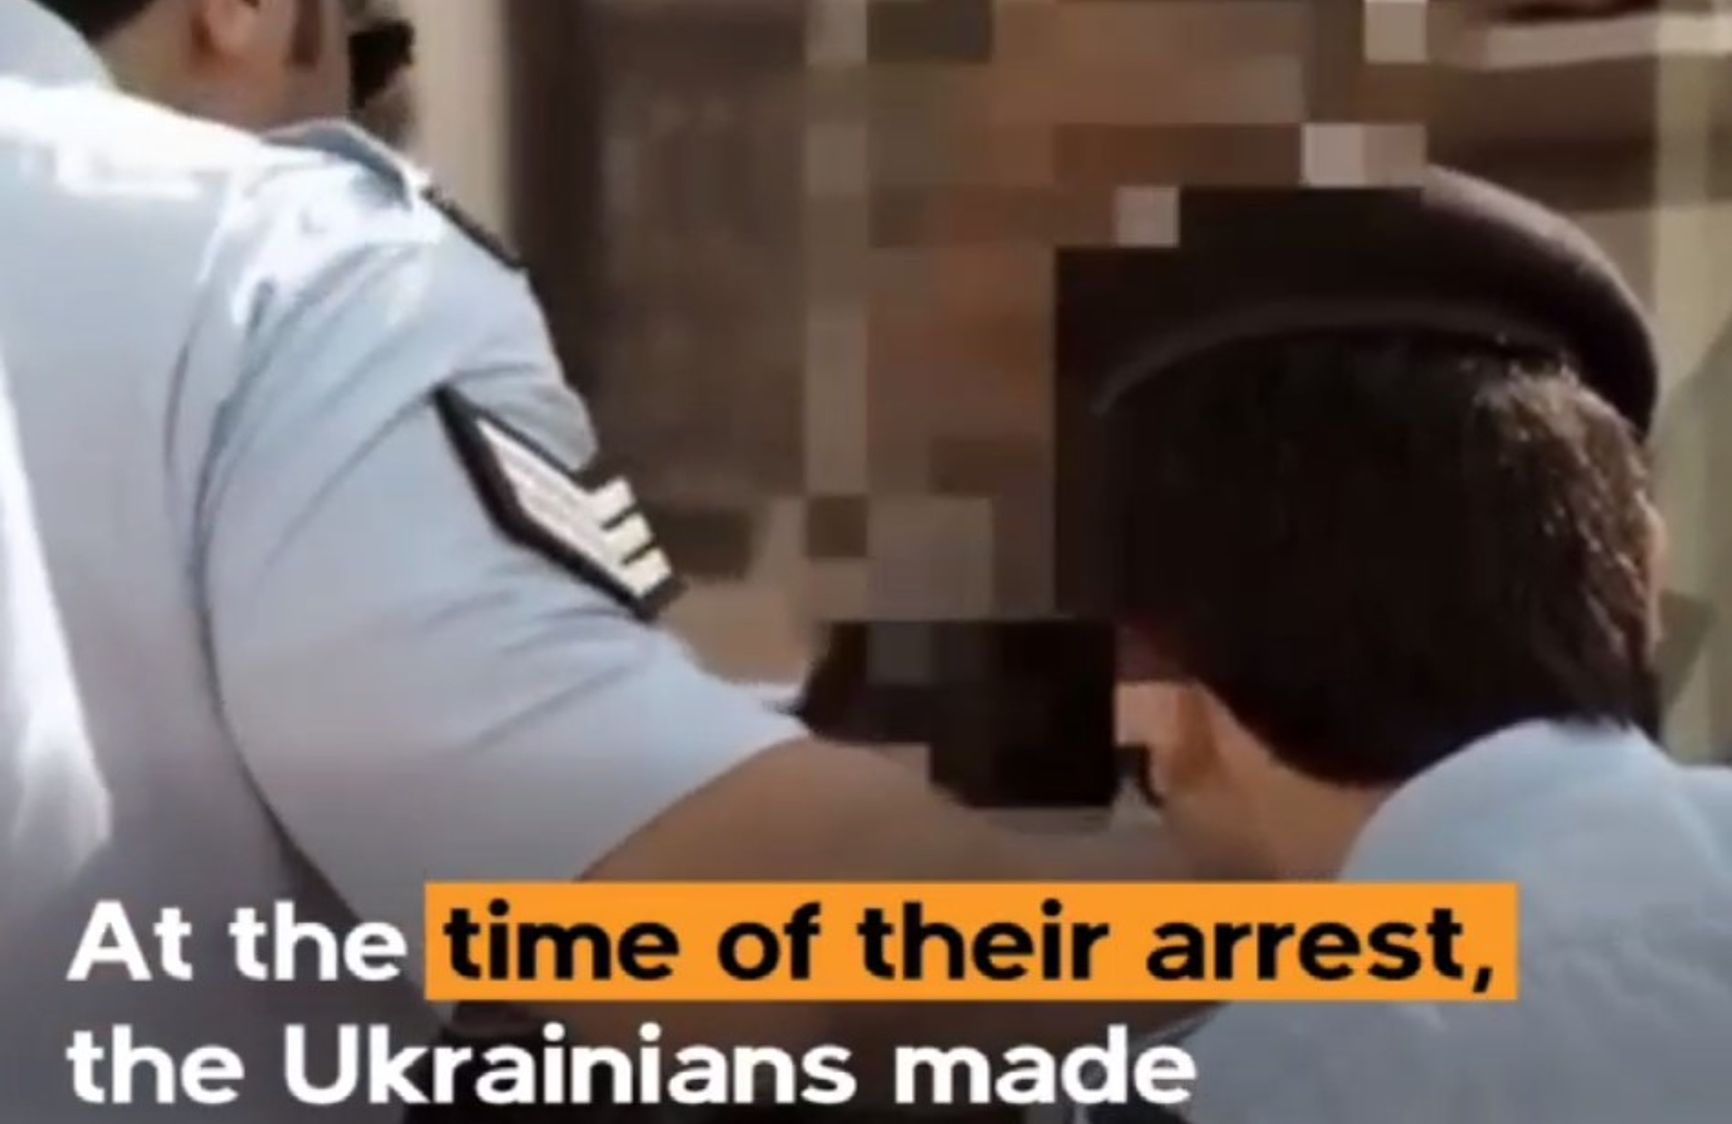 Фейк кремлевских СМИ: украинские болельщики в Катаре пририсовали символу чемпионата мира гитлеровские усы